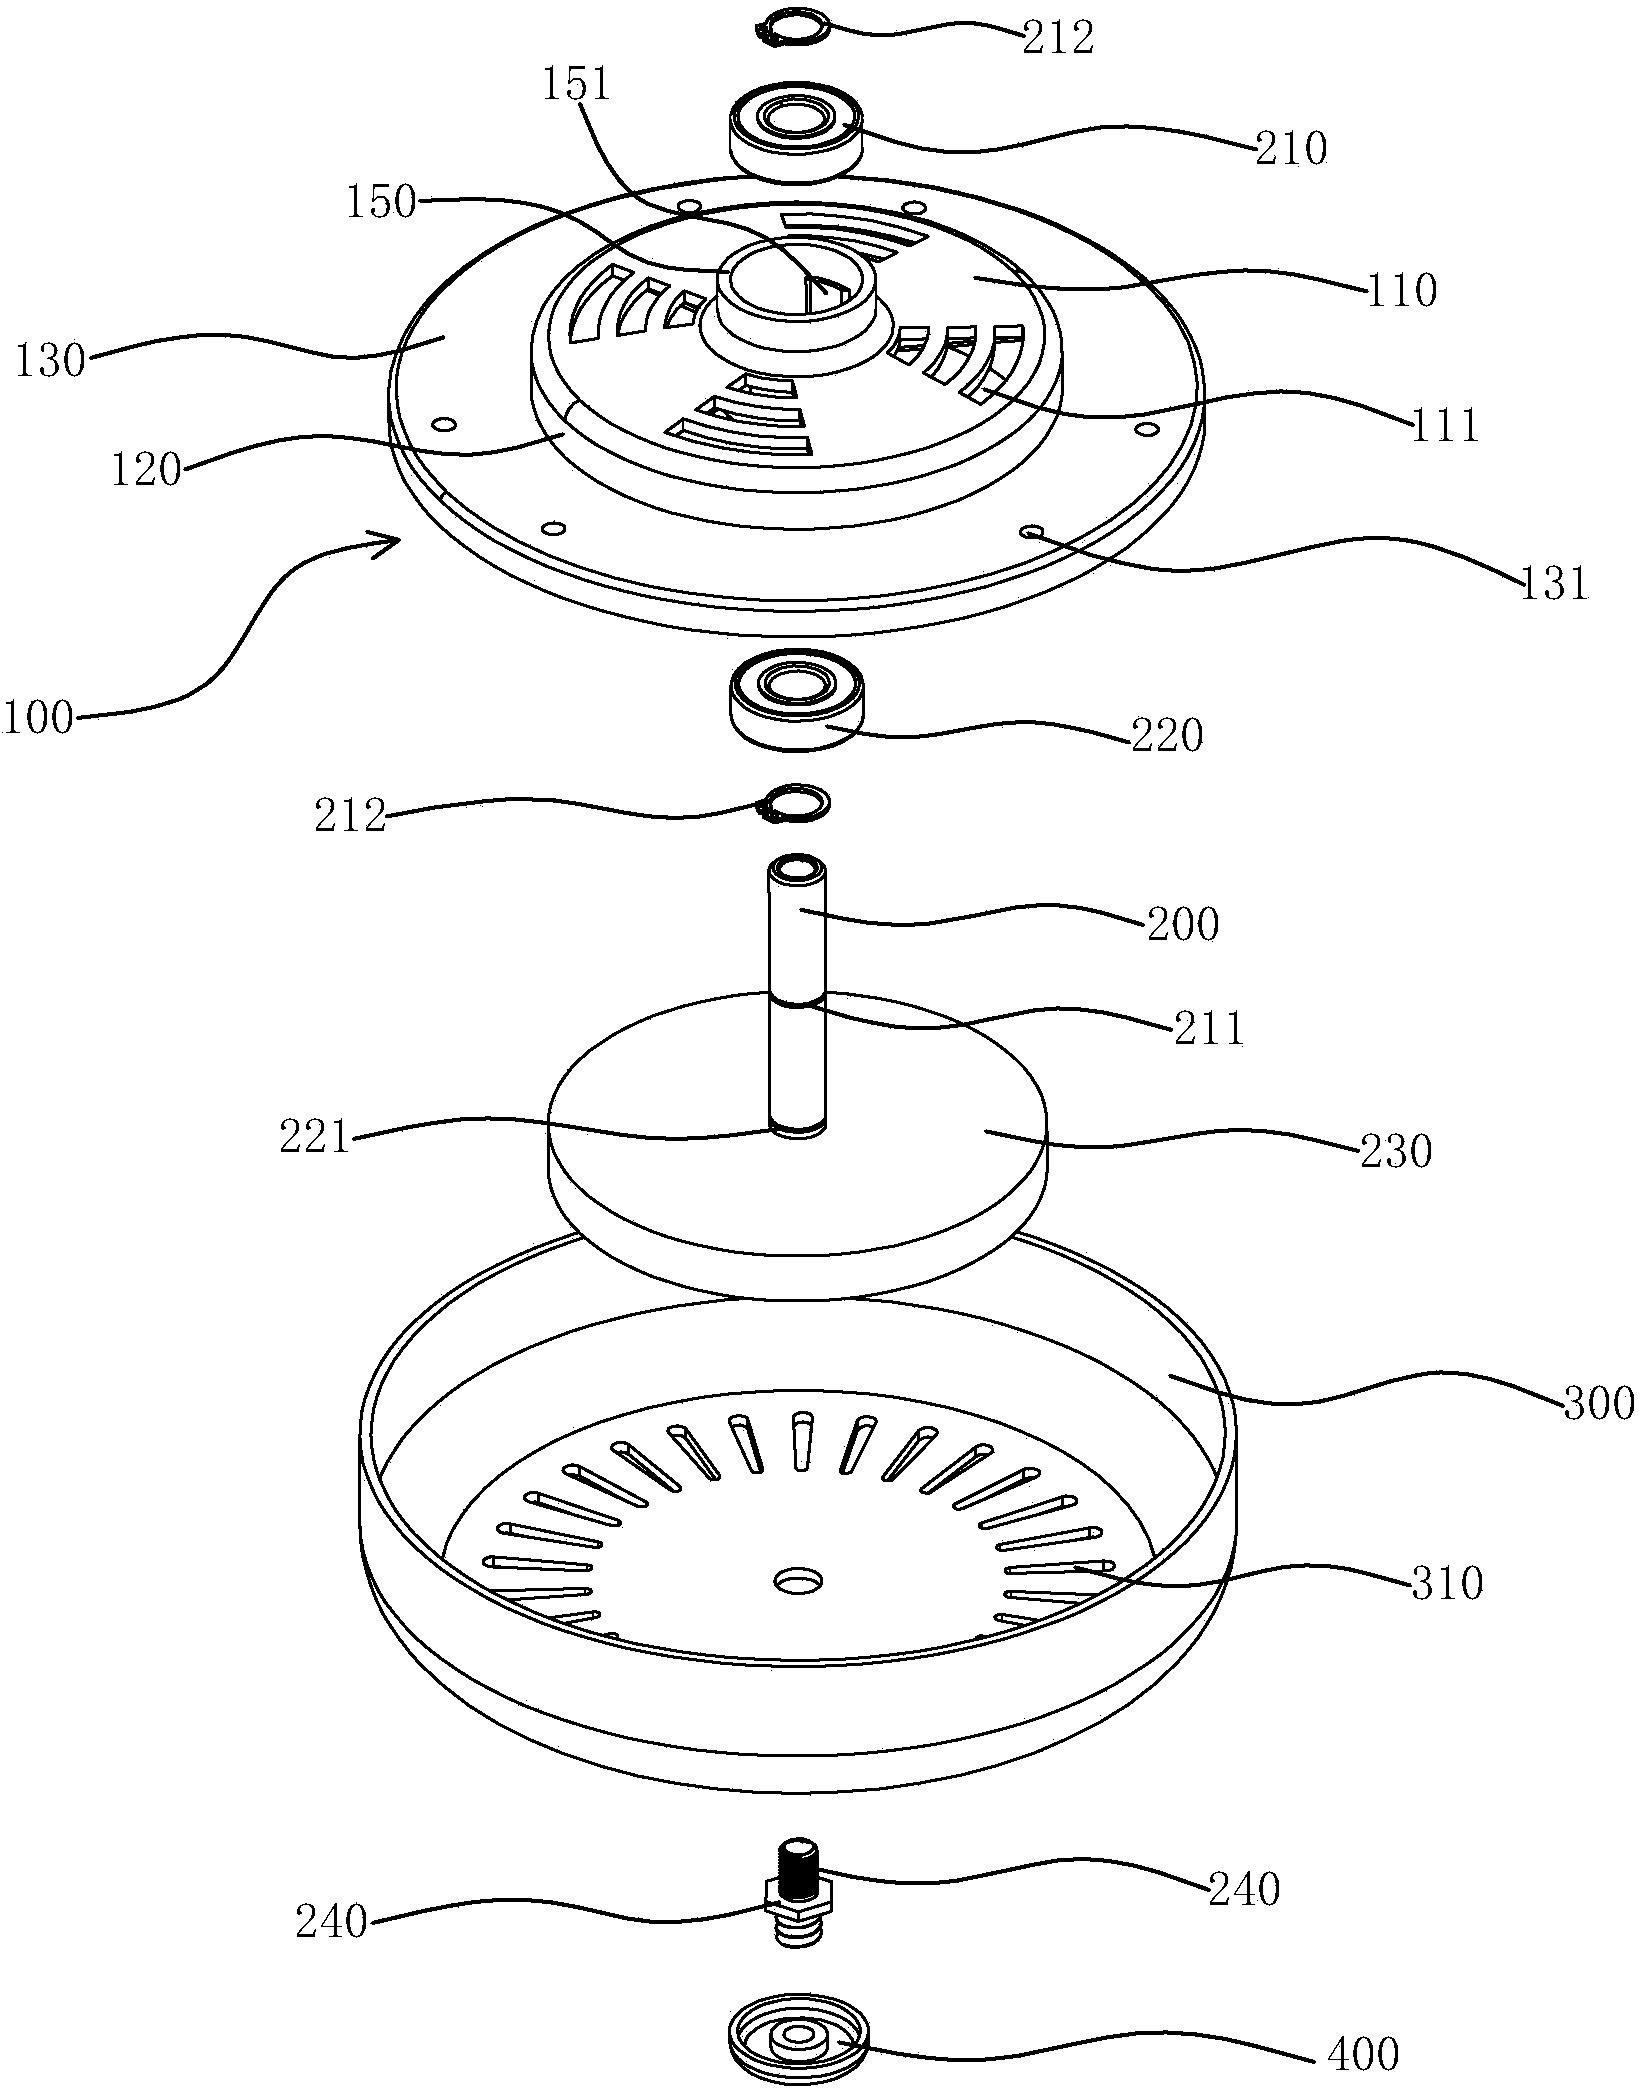 Ceiling fan motor